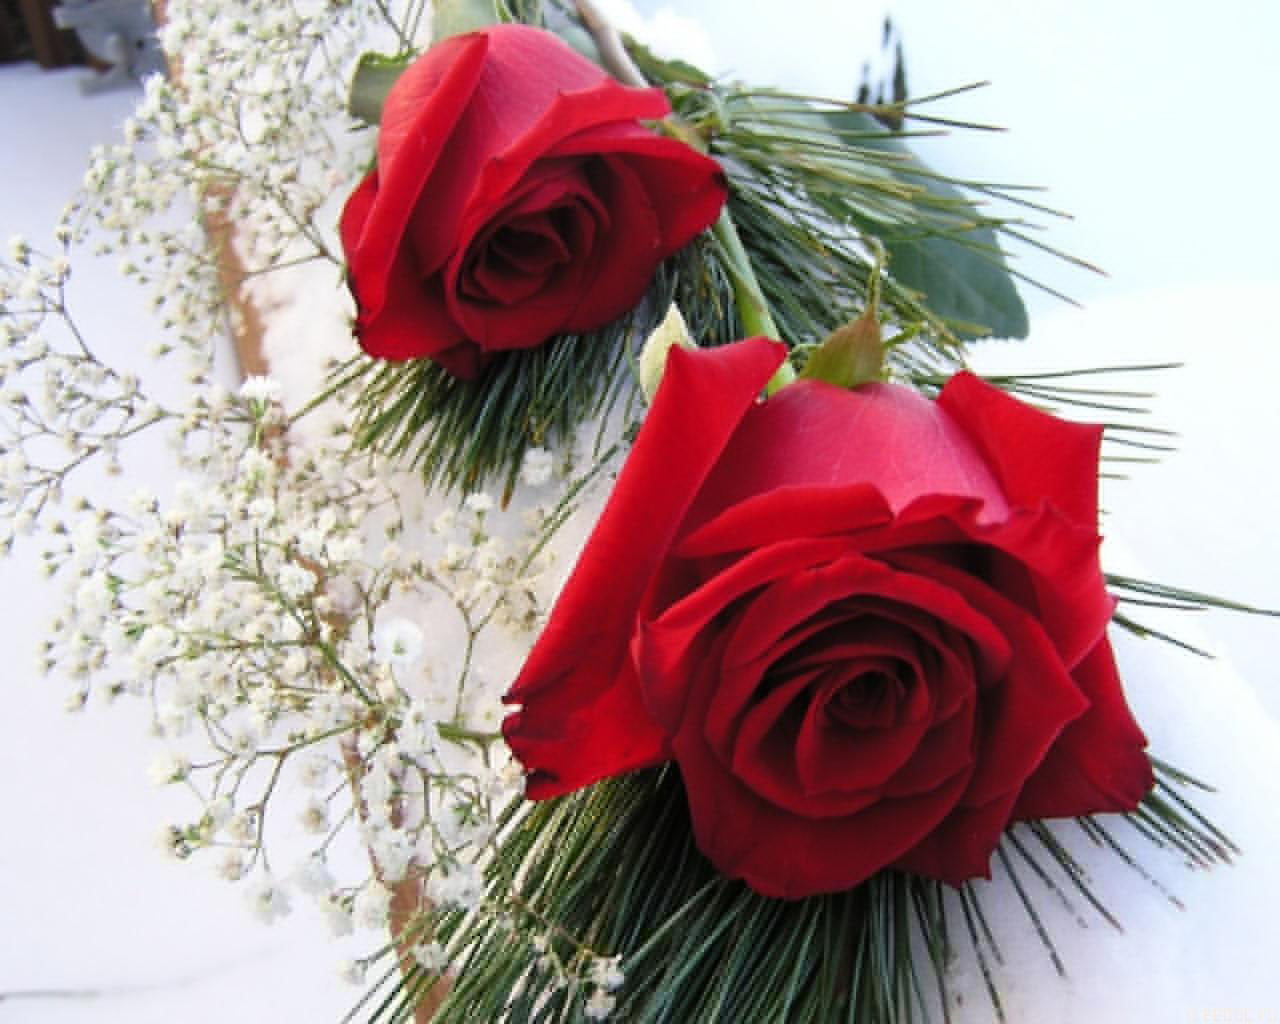 صور ورود روعه خلفيات ورود جميلة اجمل الورود الحمراء خلفيات وردة